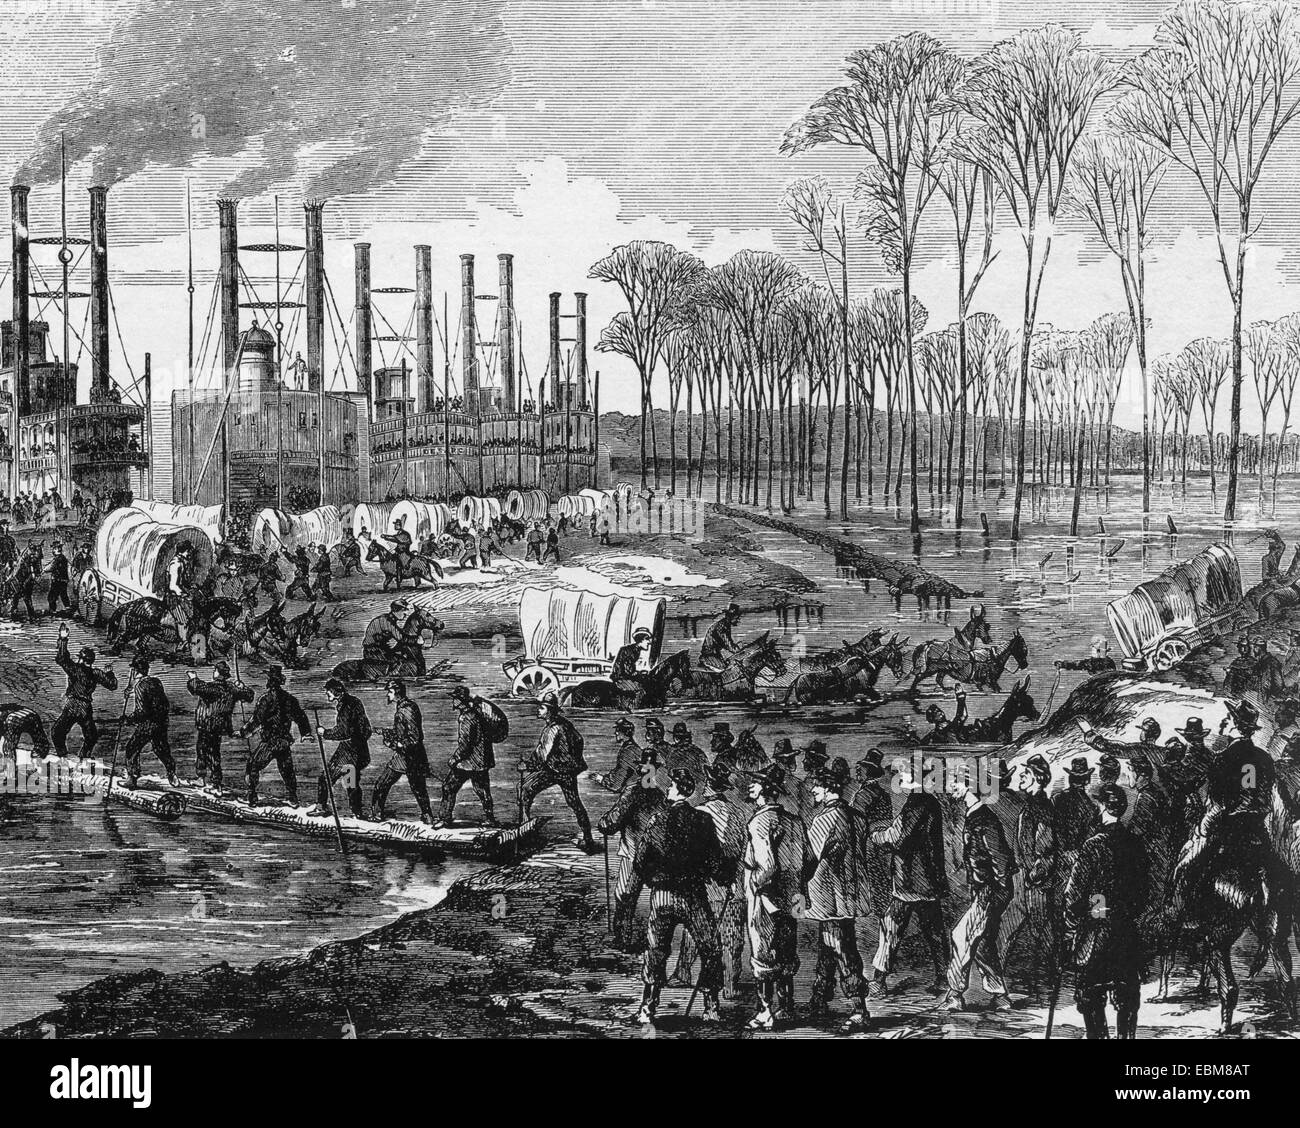 Guerre civile américaine Union Européenne camp à Young's Point la préparation pour assaut final sur Vicksburg en janvier 1863. Situé sur la rive ouest du Mississippi au sud de Milliken's Bend Banque D'Images